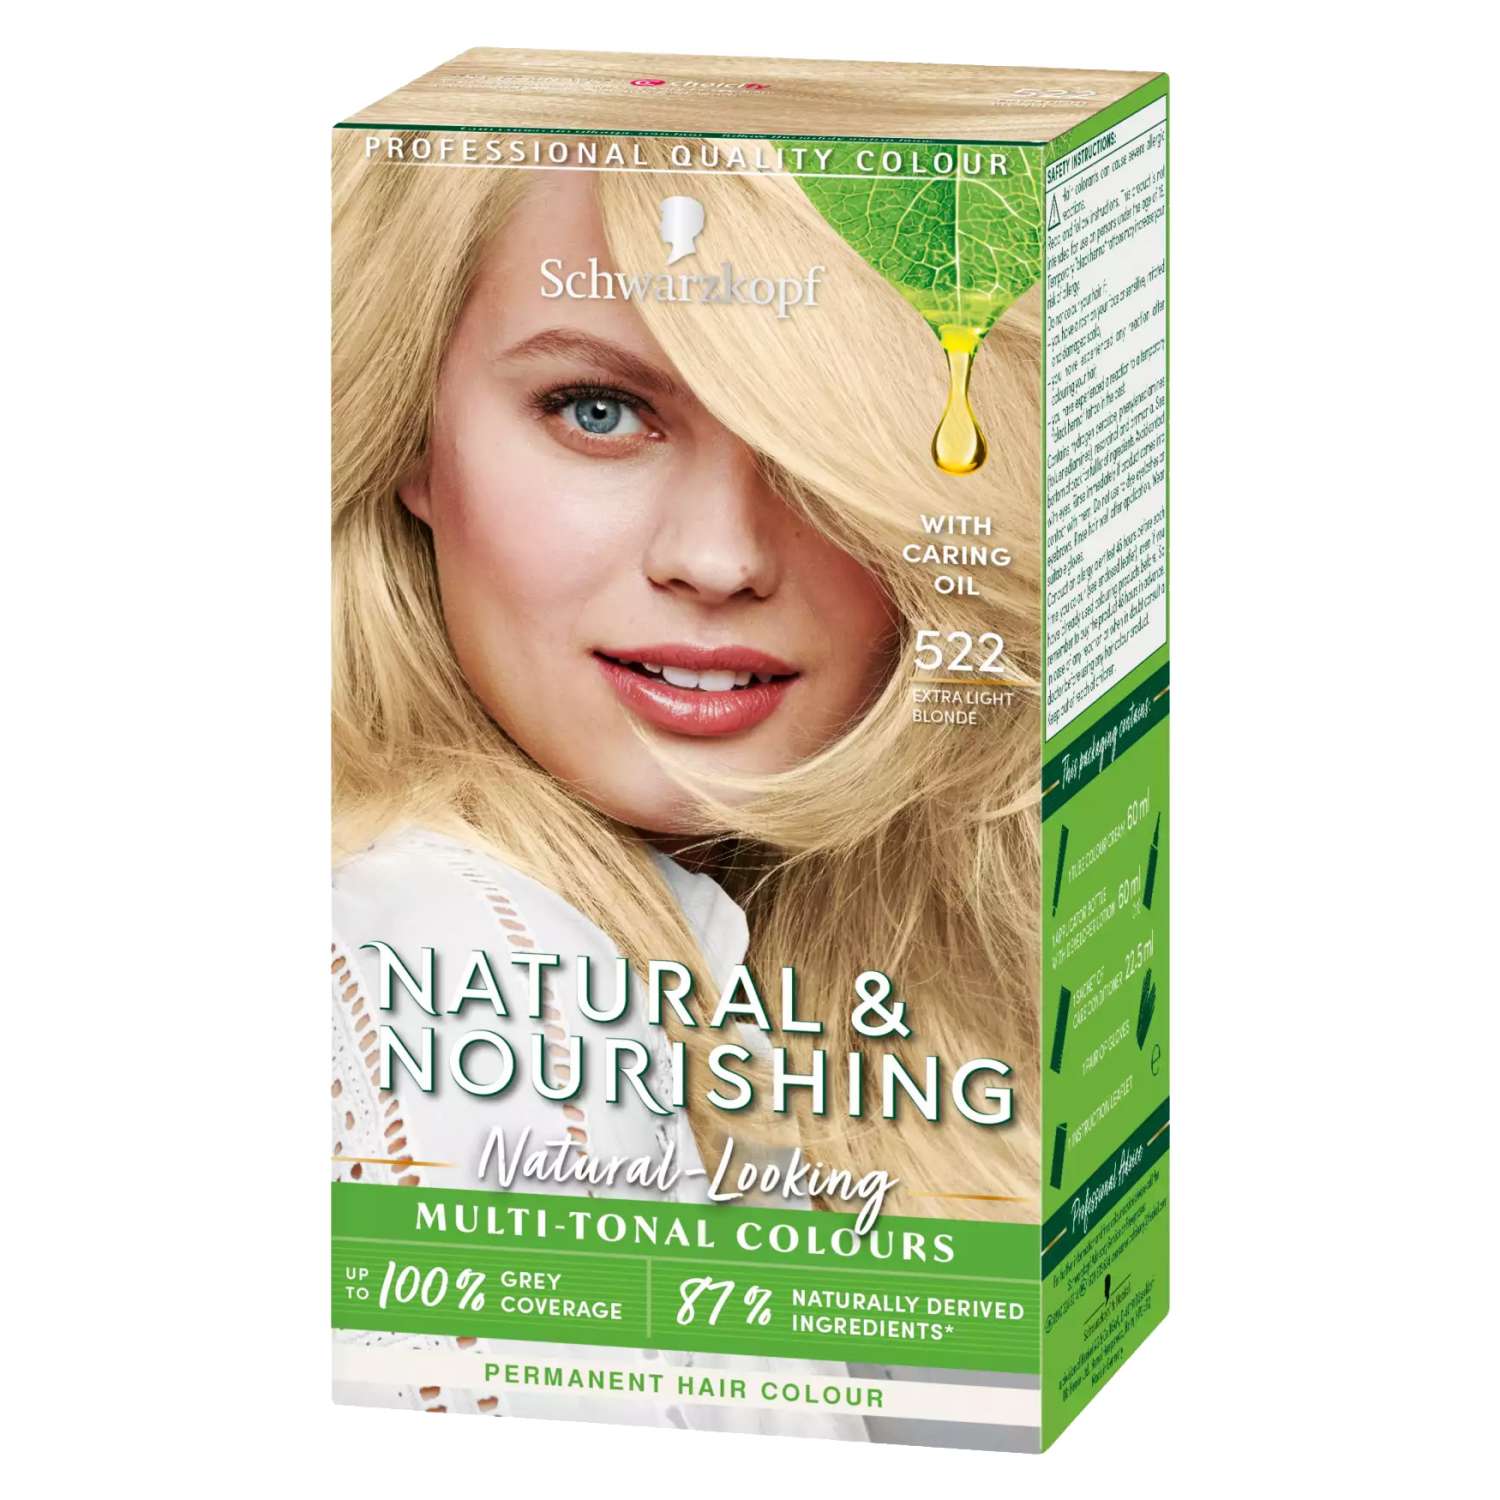 Schwarzkopf Natural and Nourishing Hair Dye Silver Light Blonde 522 - Dollars and Sense